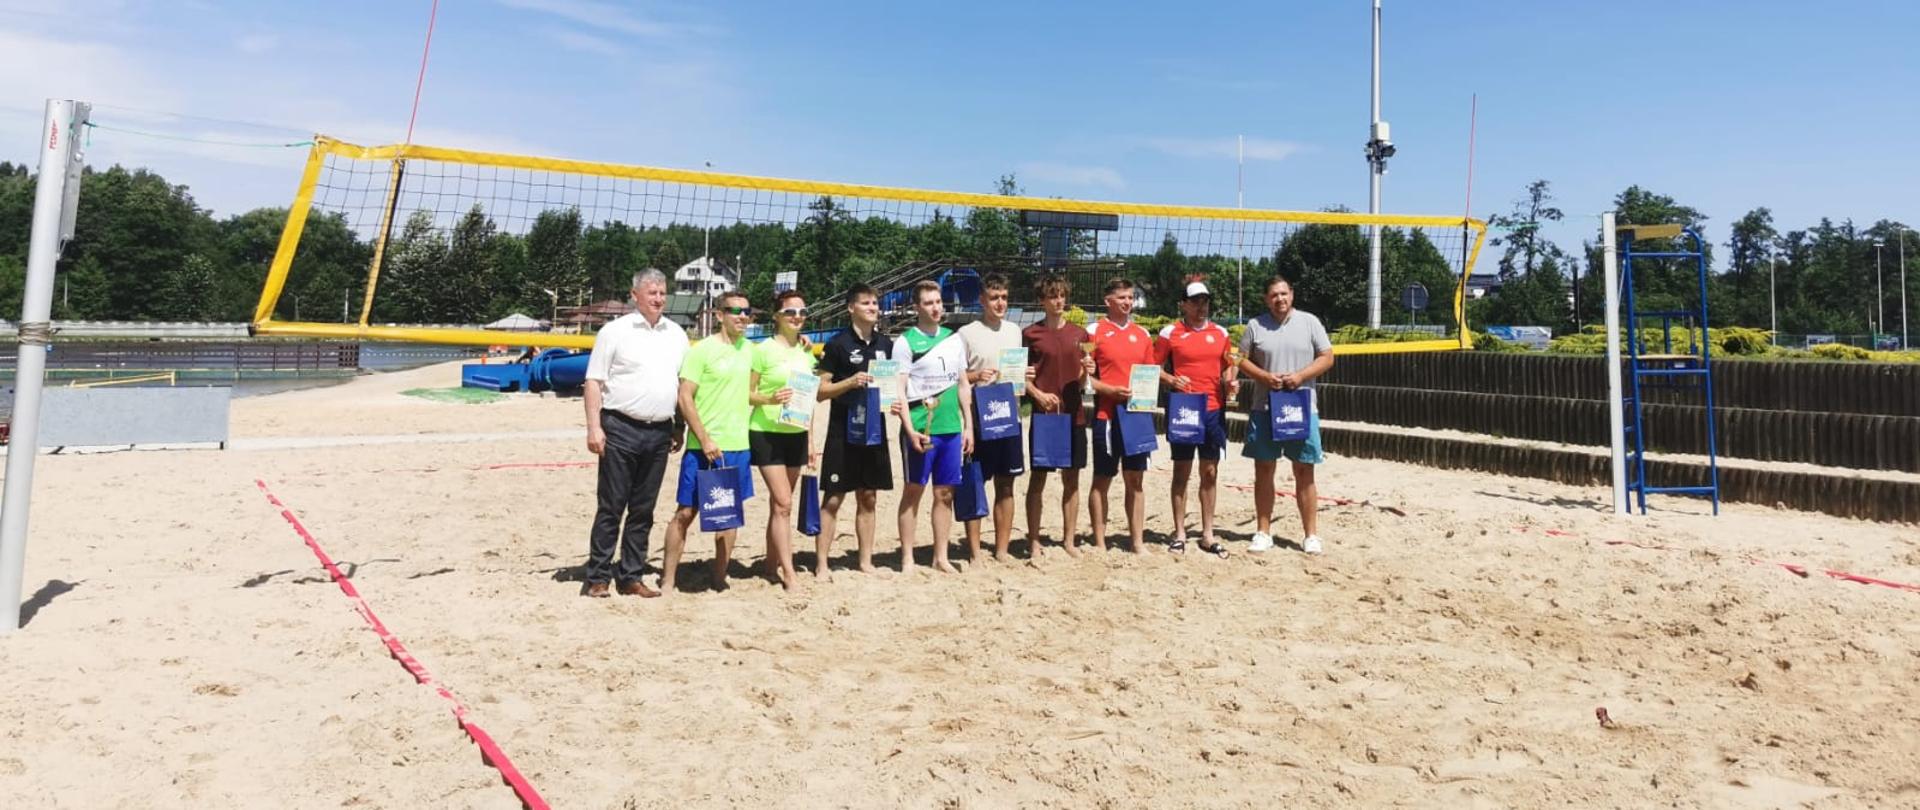 Zdjęcie przedstawia wszystkie drużyny podczas XVI Gminnego Otwartego Turnieju Siatkówki Plażowej. Zdjęcie zrobione na tle siatki na boisku do siatkówki plażowej. Zawodnicy trzymają puchary oraz nagrody rzeczowe.